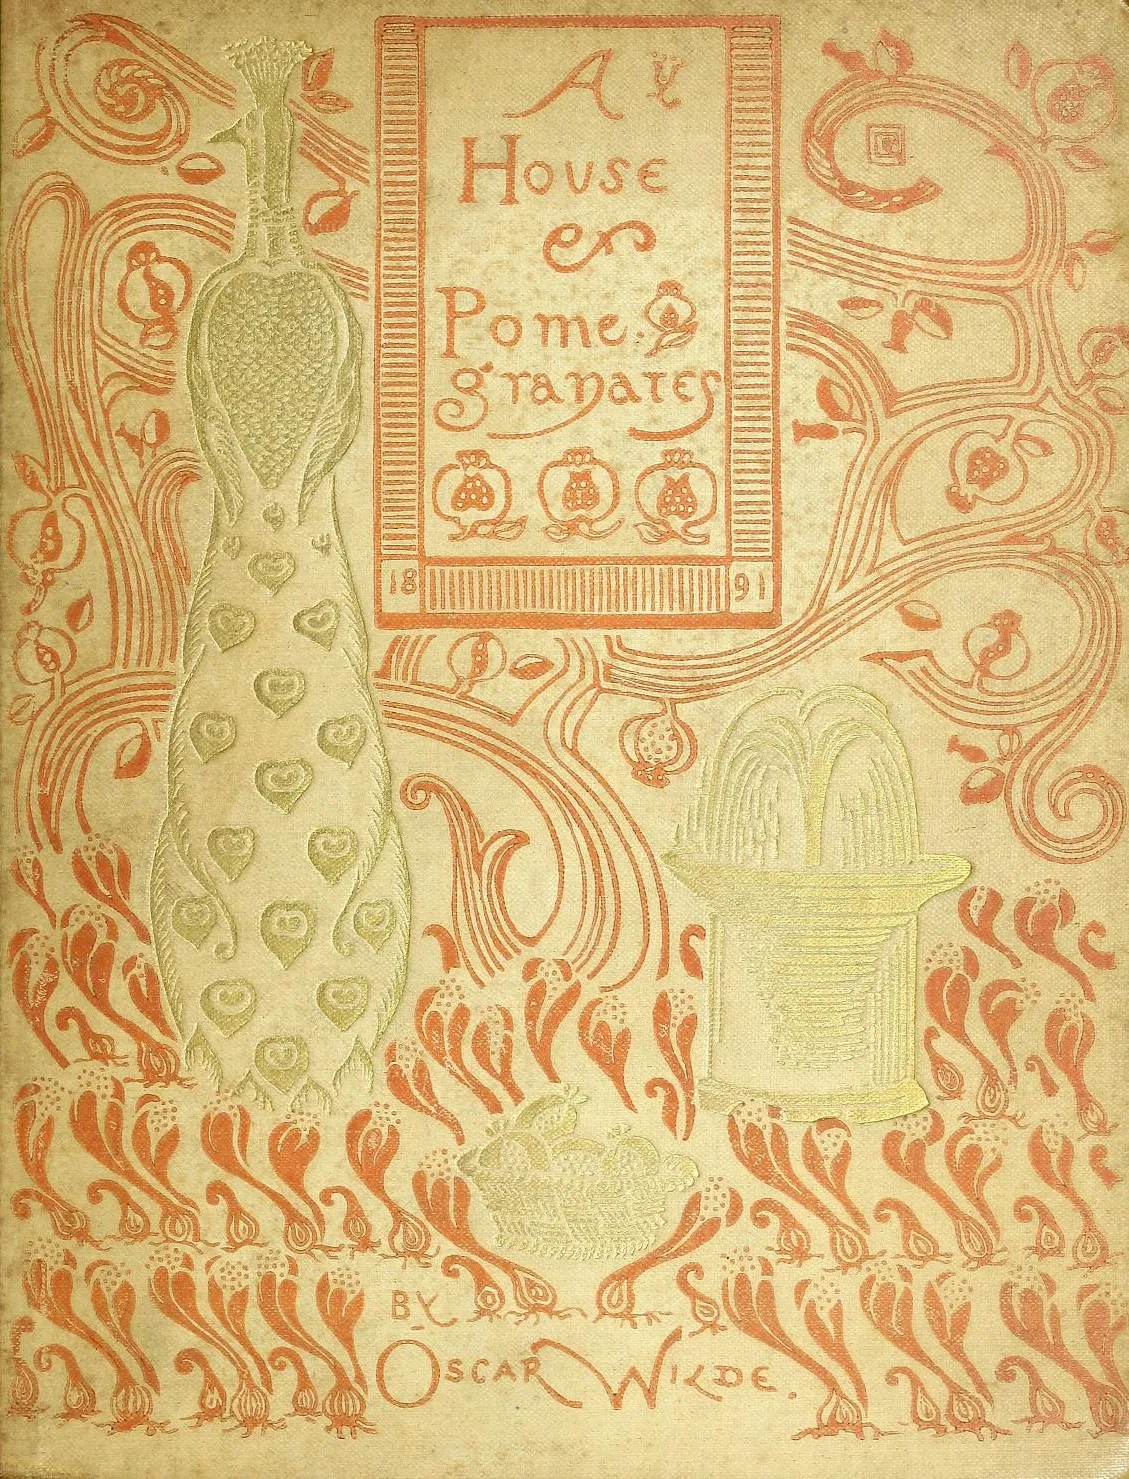 オスカー・ワイルドの『星の子』を含む小説集の薄い黄色の表紙